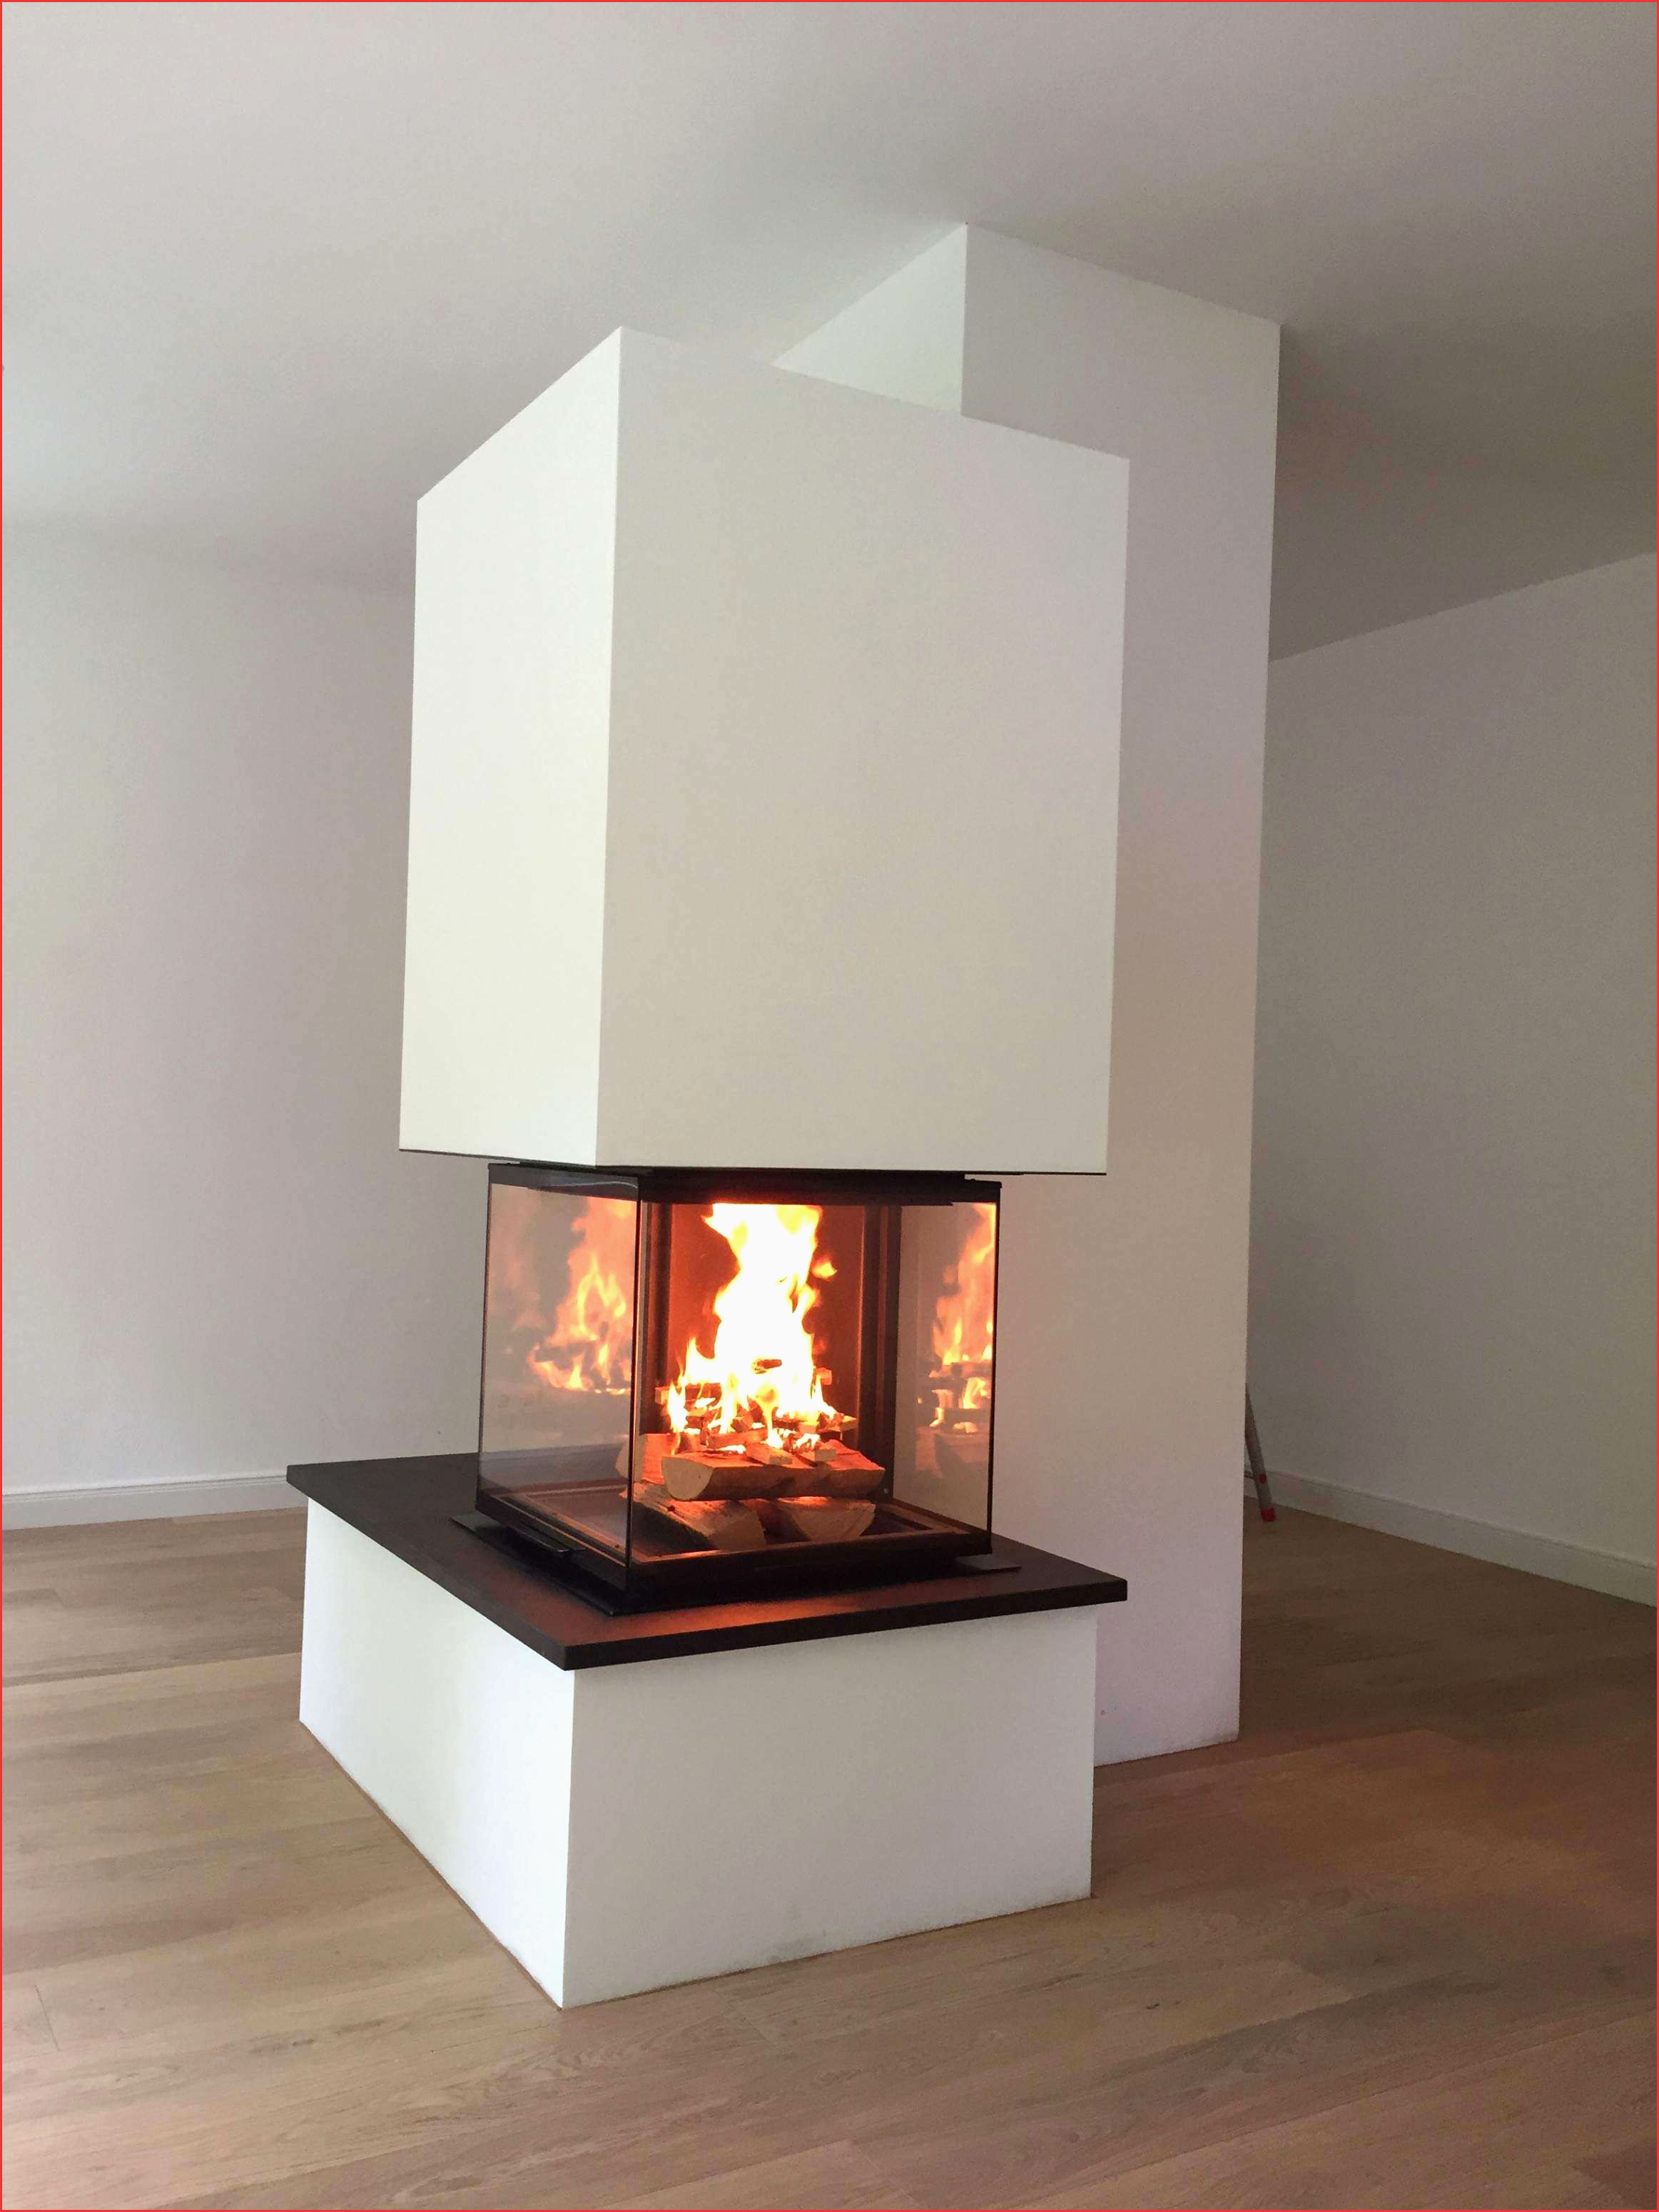 Pictures Of Fireplace Hearths New Schaukel Wohnzimmer Design Tipps Von Experten